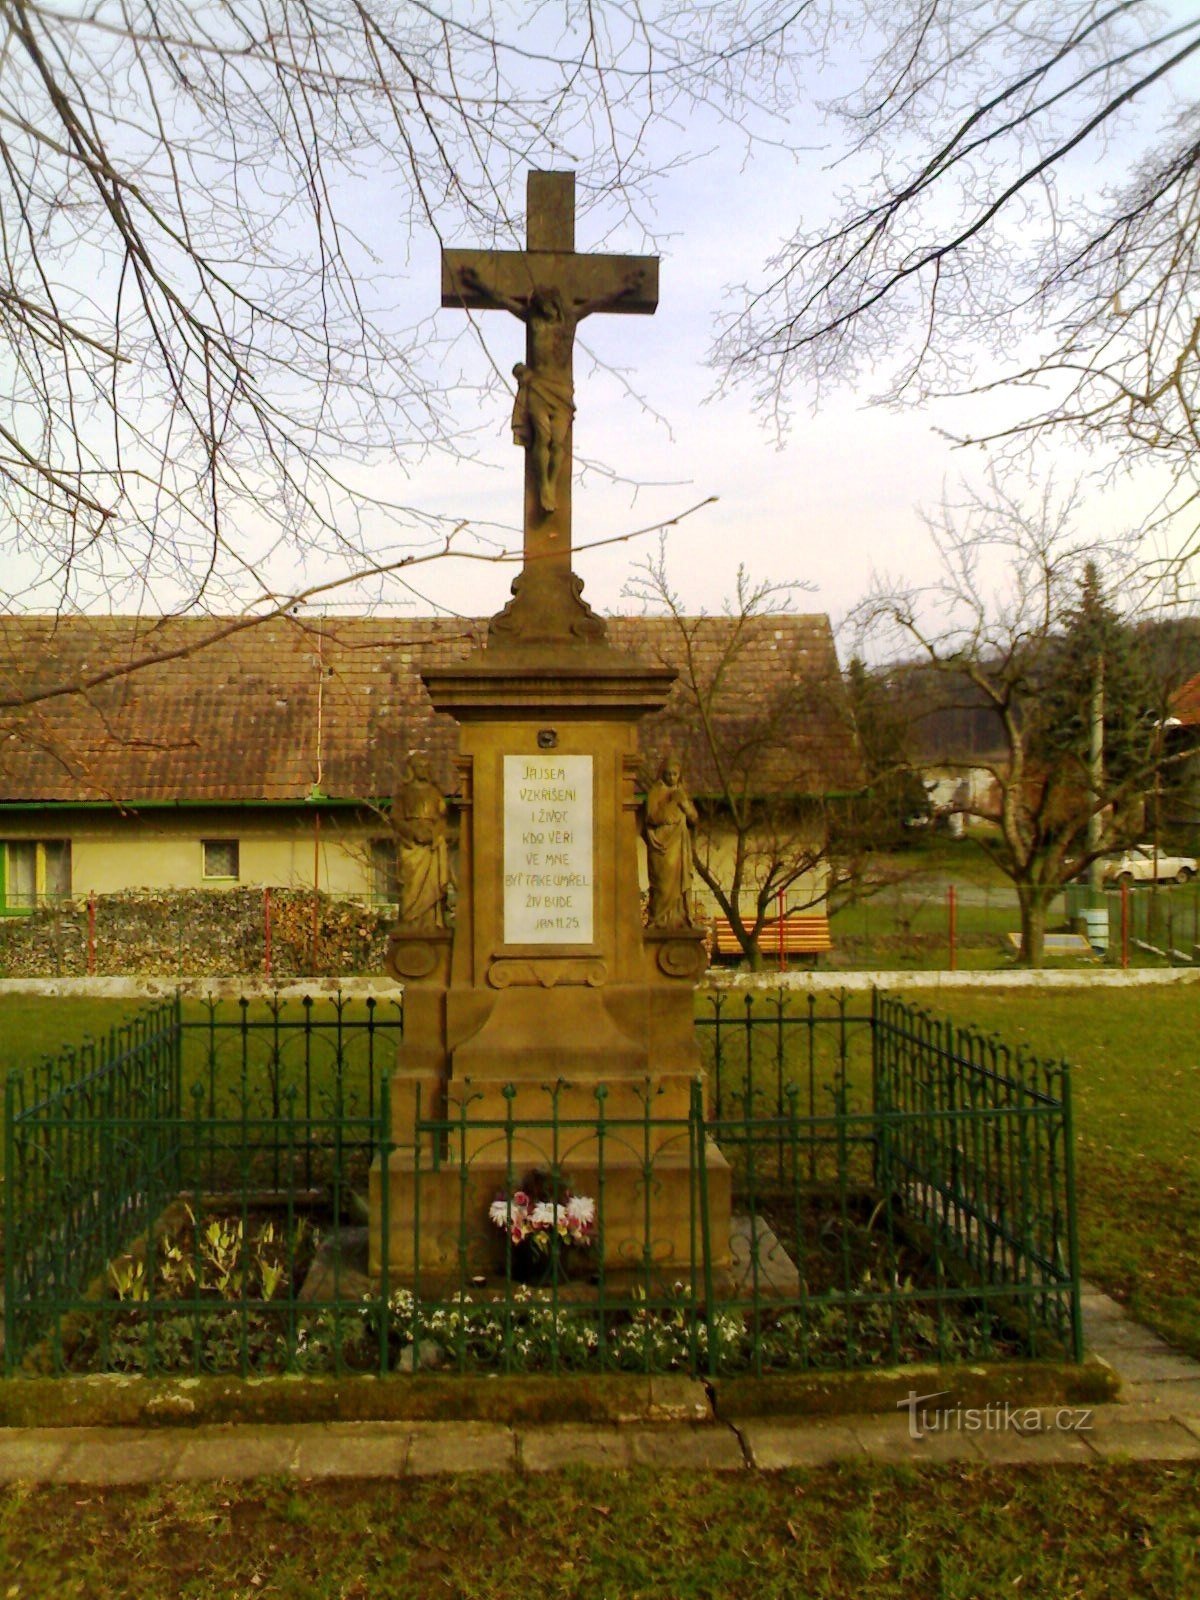 Libníkovice - monument de răstignire cu clopotniță